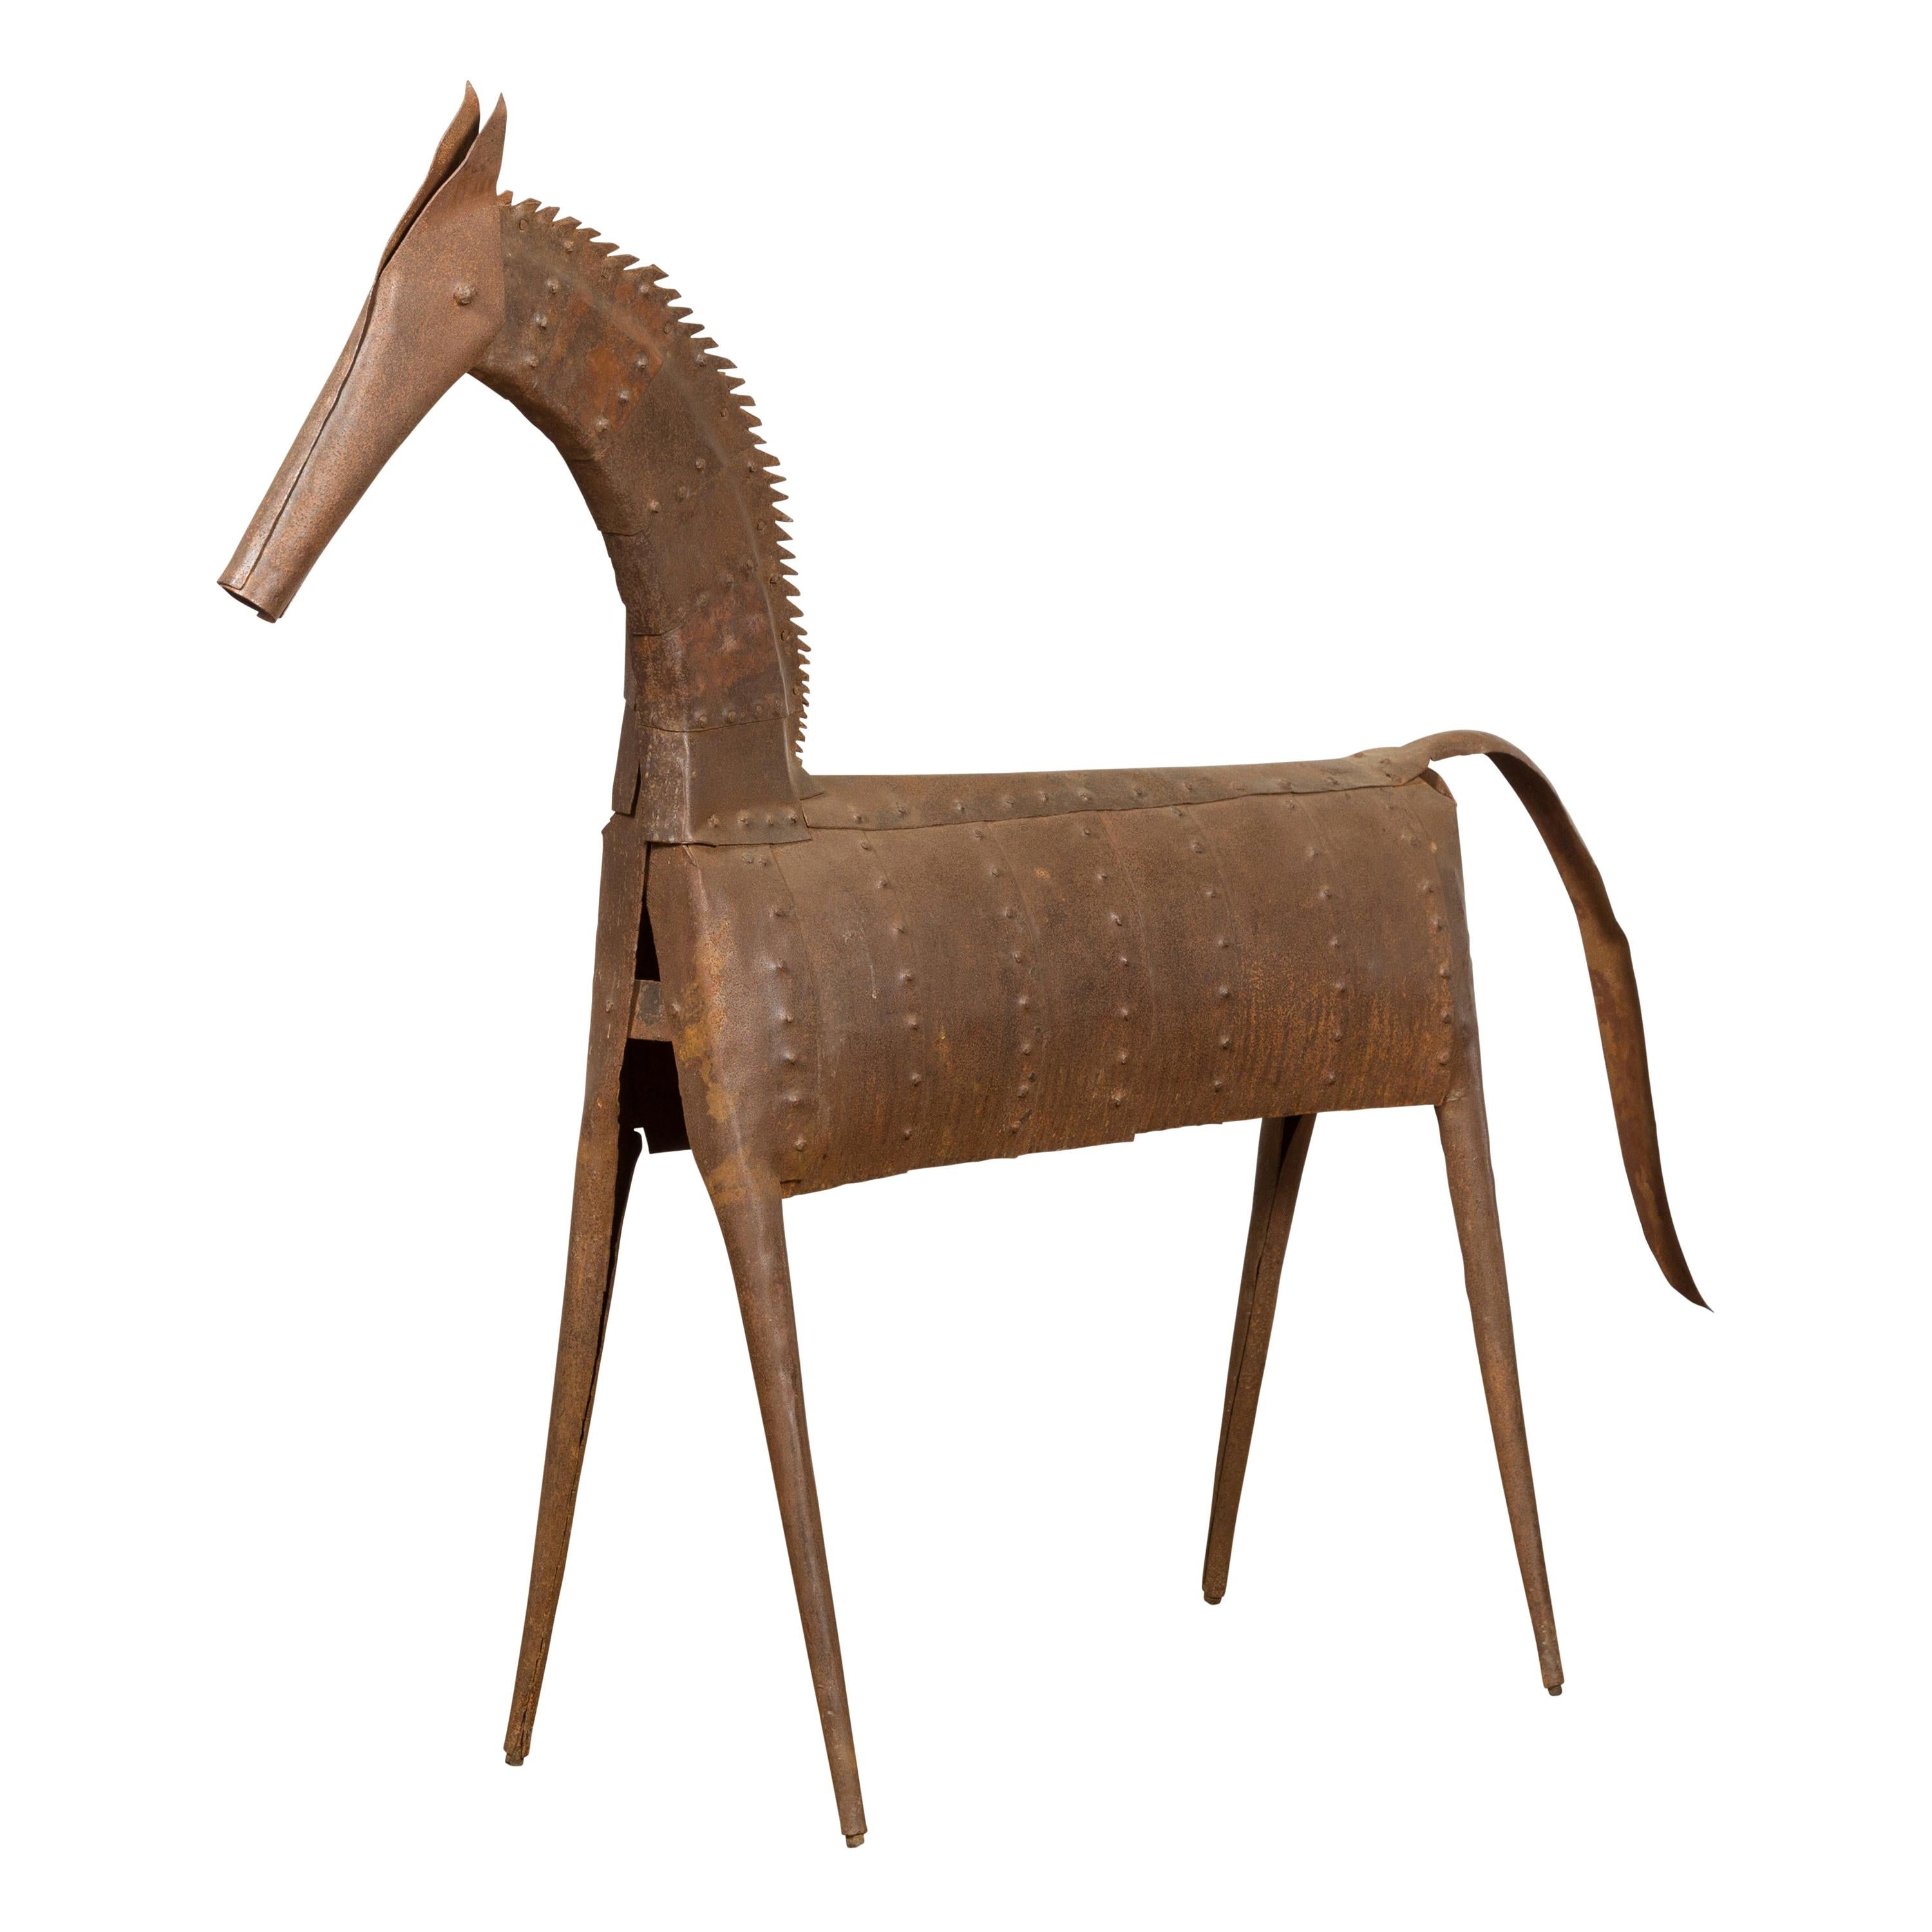 Sculpture de cheval indienne vintage en fonte de style archaïque avec patine rouille